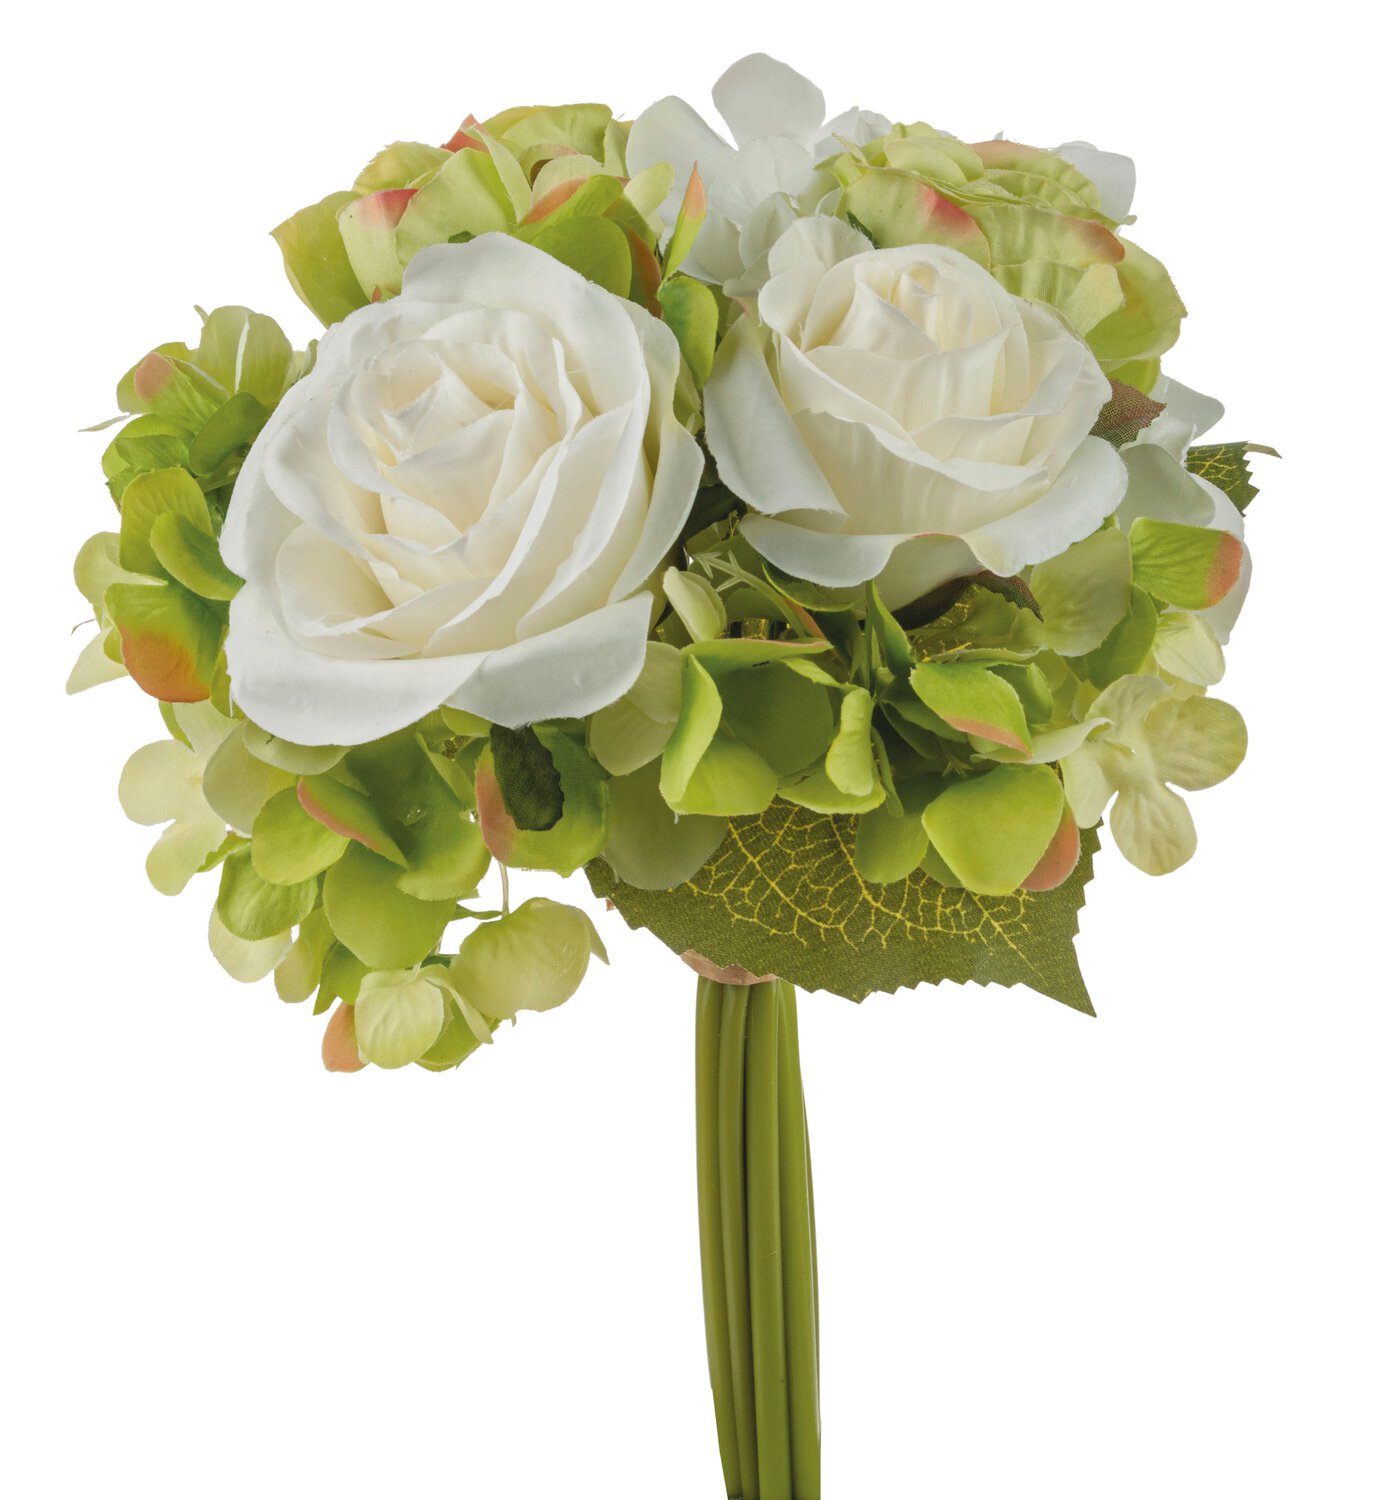 Künstliches Bouquet mit Rosen und Hortensien, 9 Stück, 25 cm, creme-grün